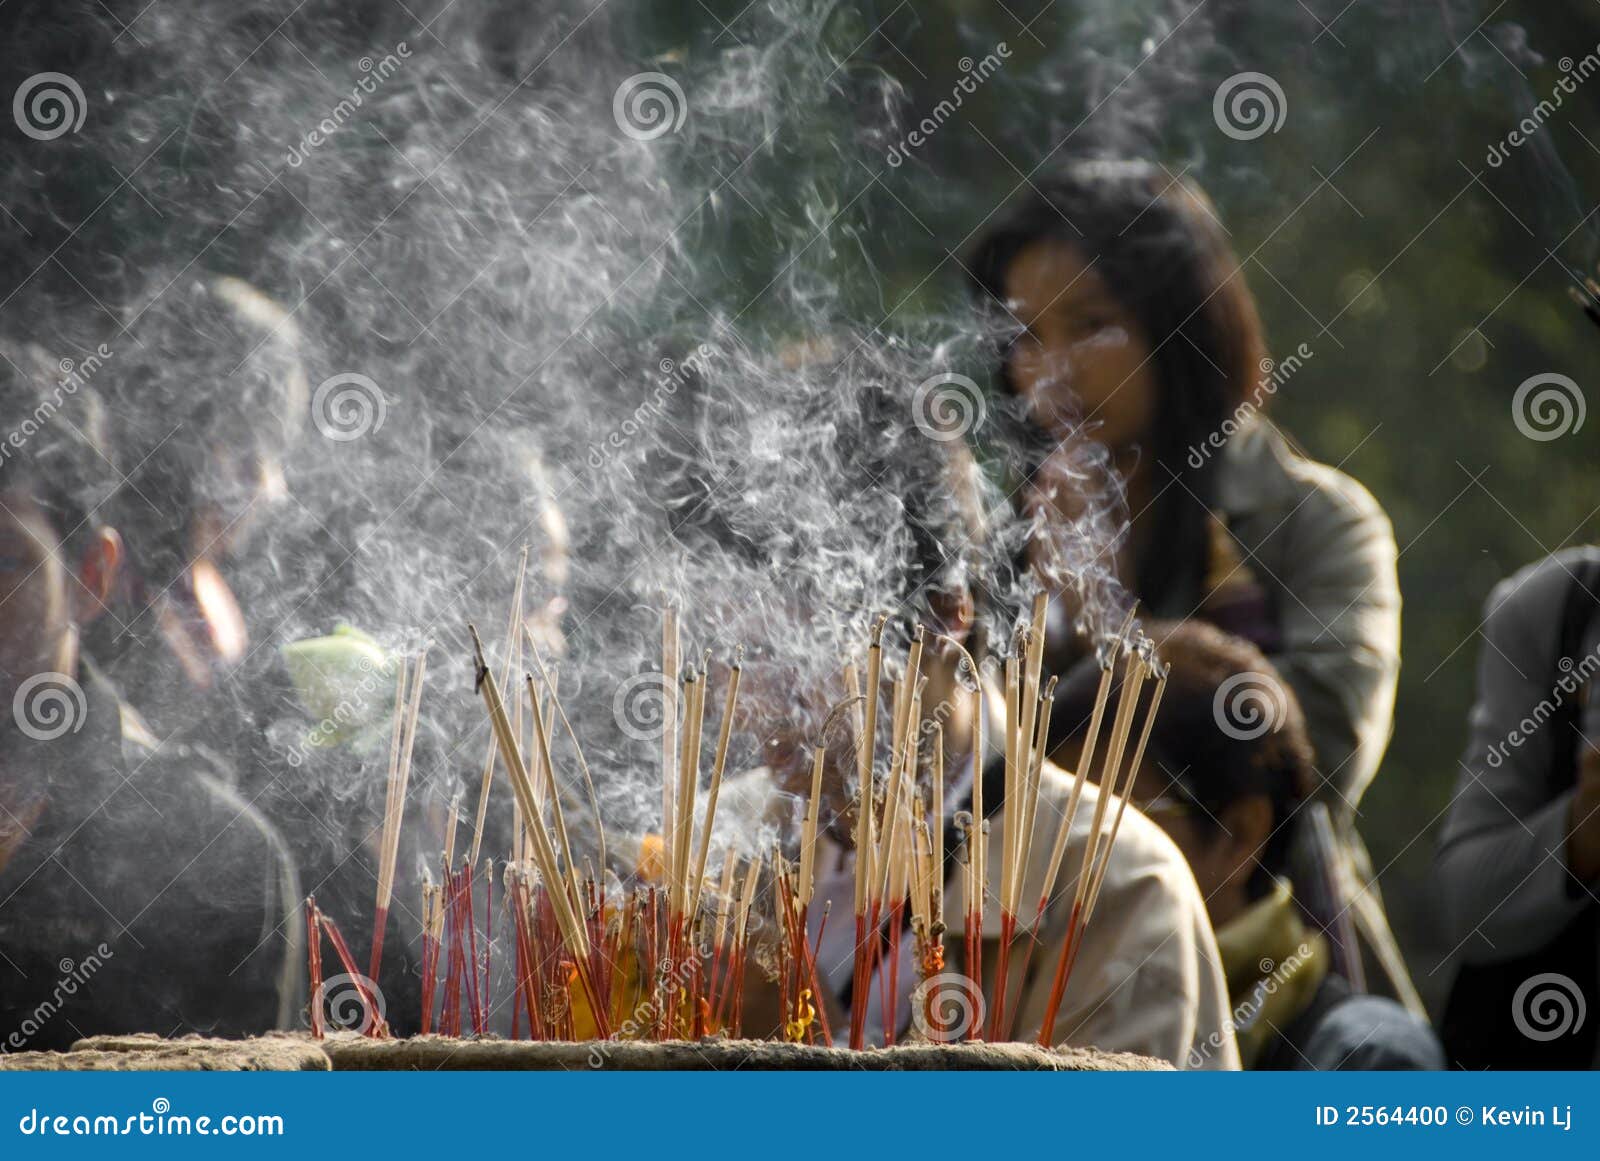 Burning do incenso. Muitos incense a vara em um urn em um santuário budista tailandês que queima-se com lotes do fumo e dos povos fora de foco no fundo